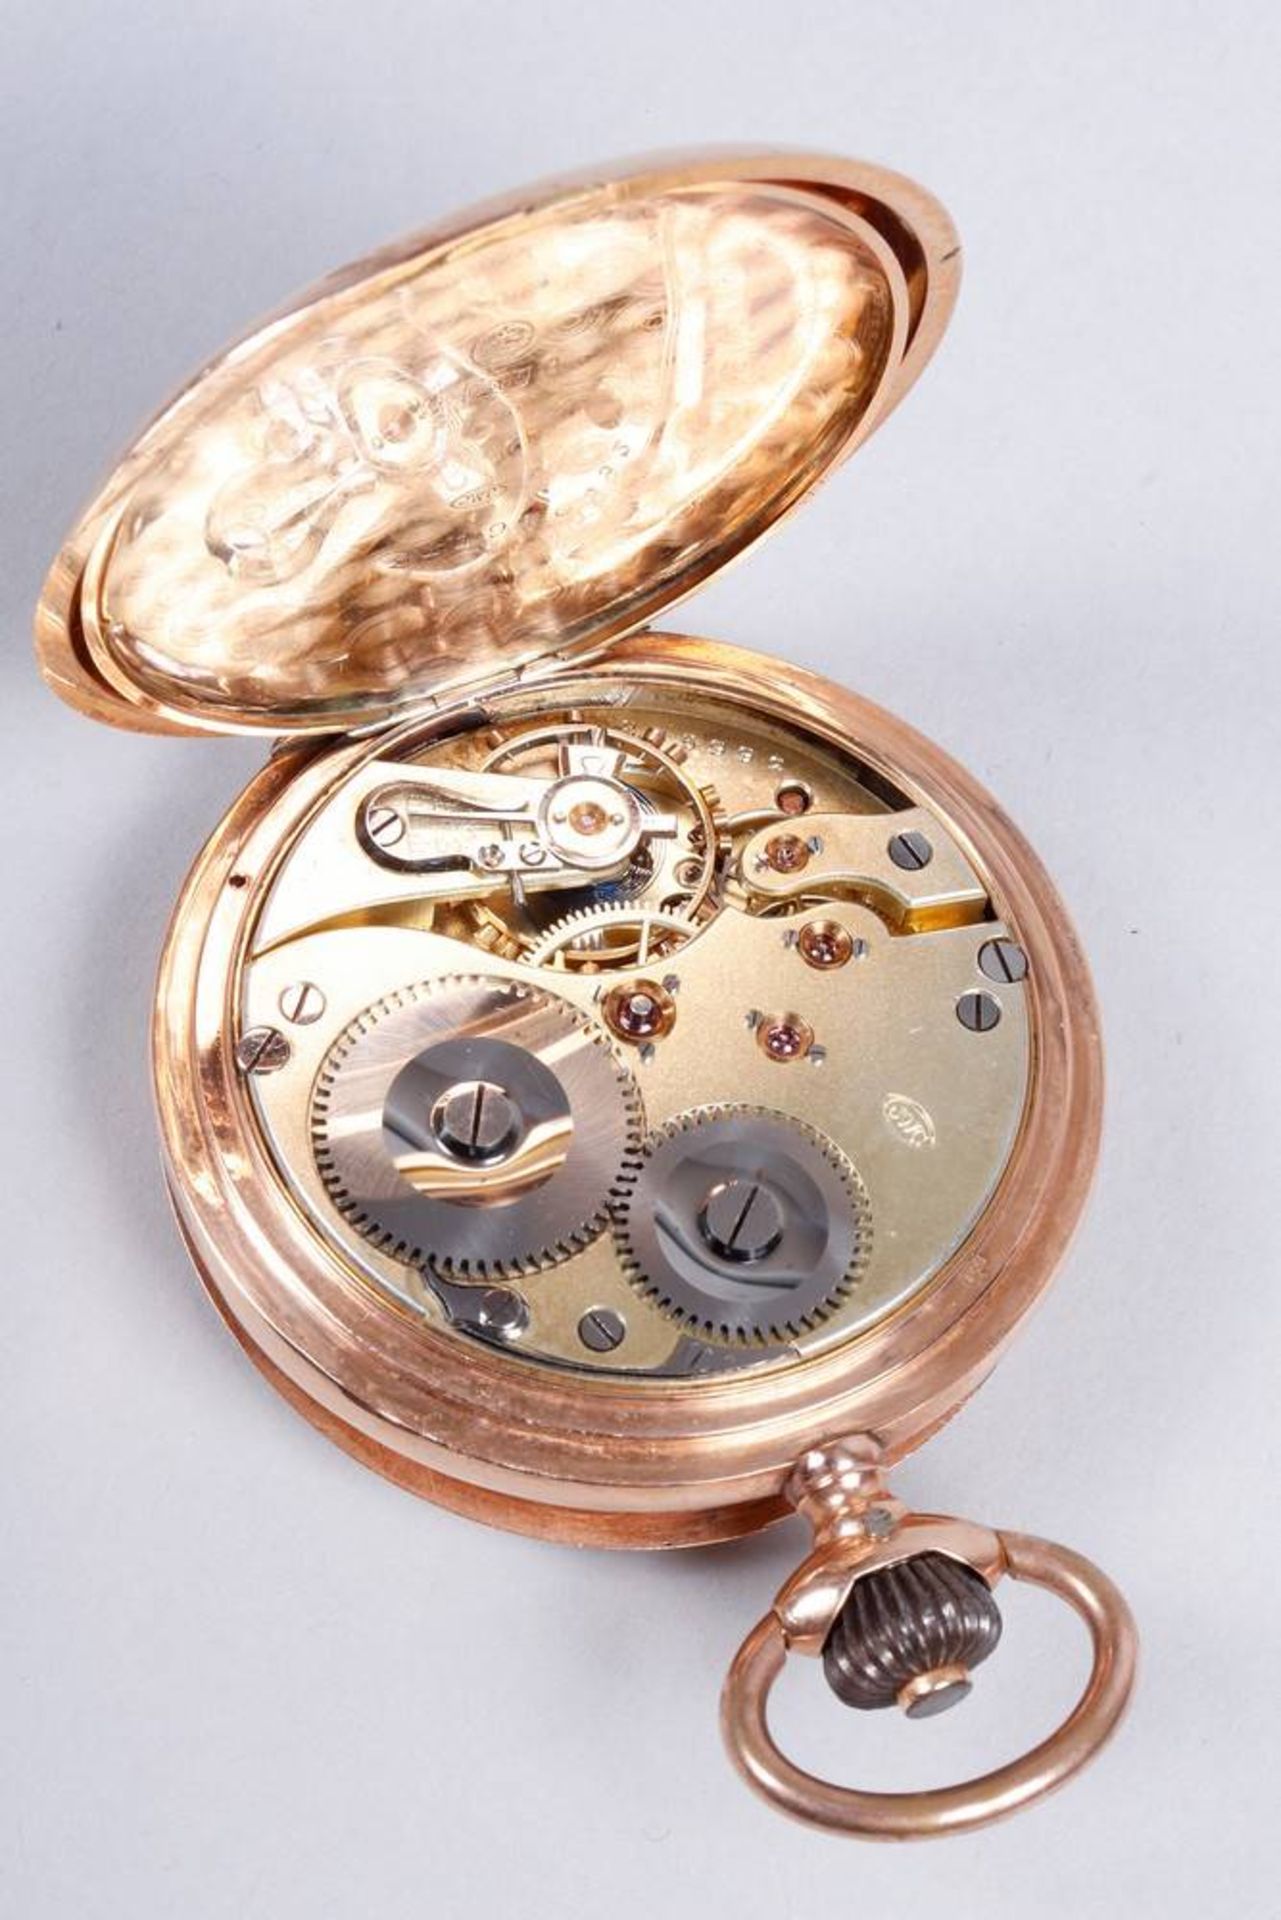 IWC Savonette pocket watch, around 1910, 585 gold - Image 6 of 7